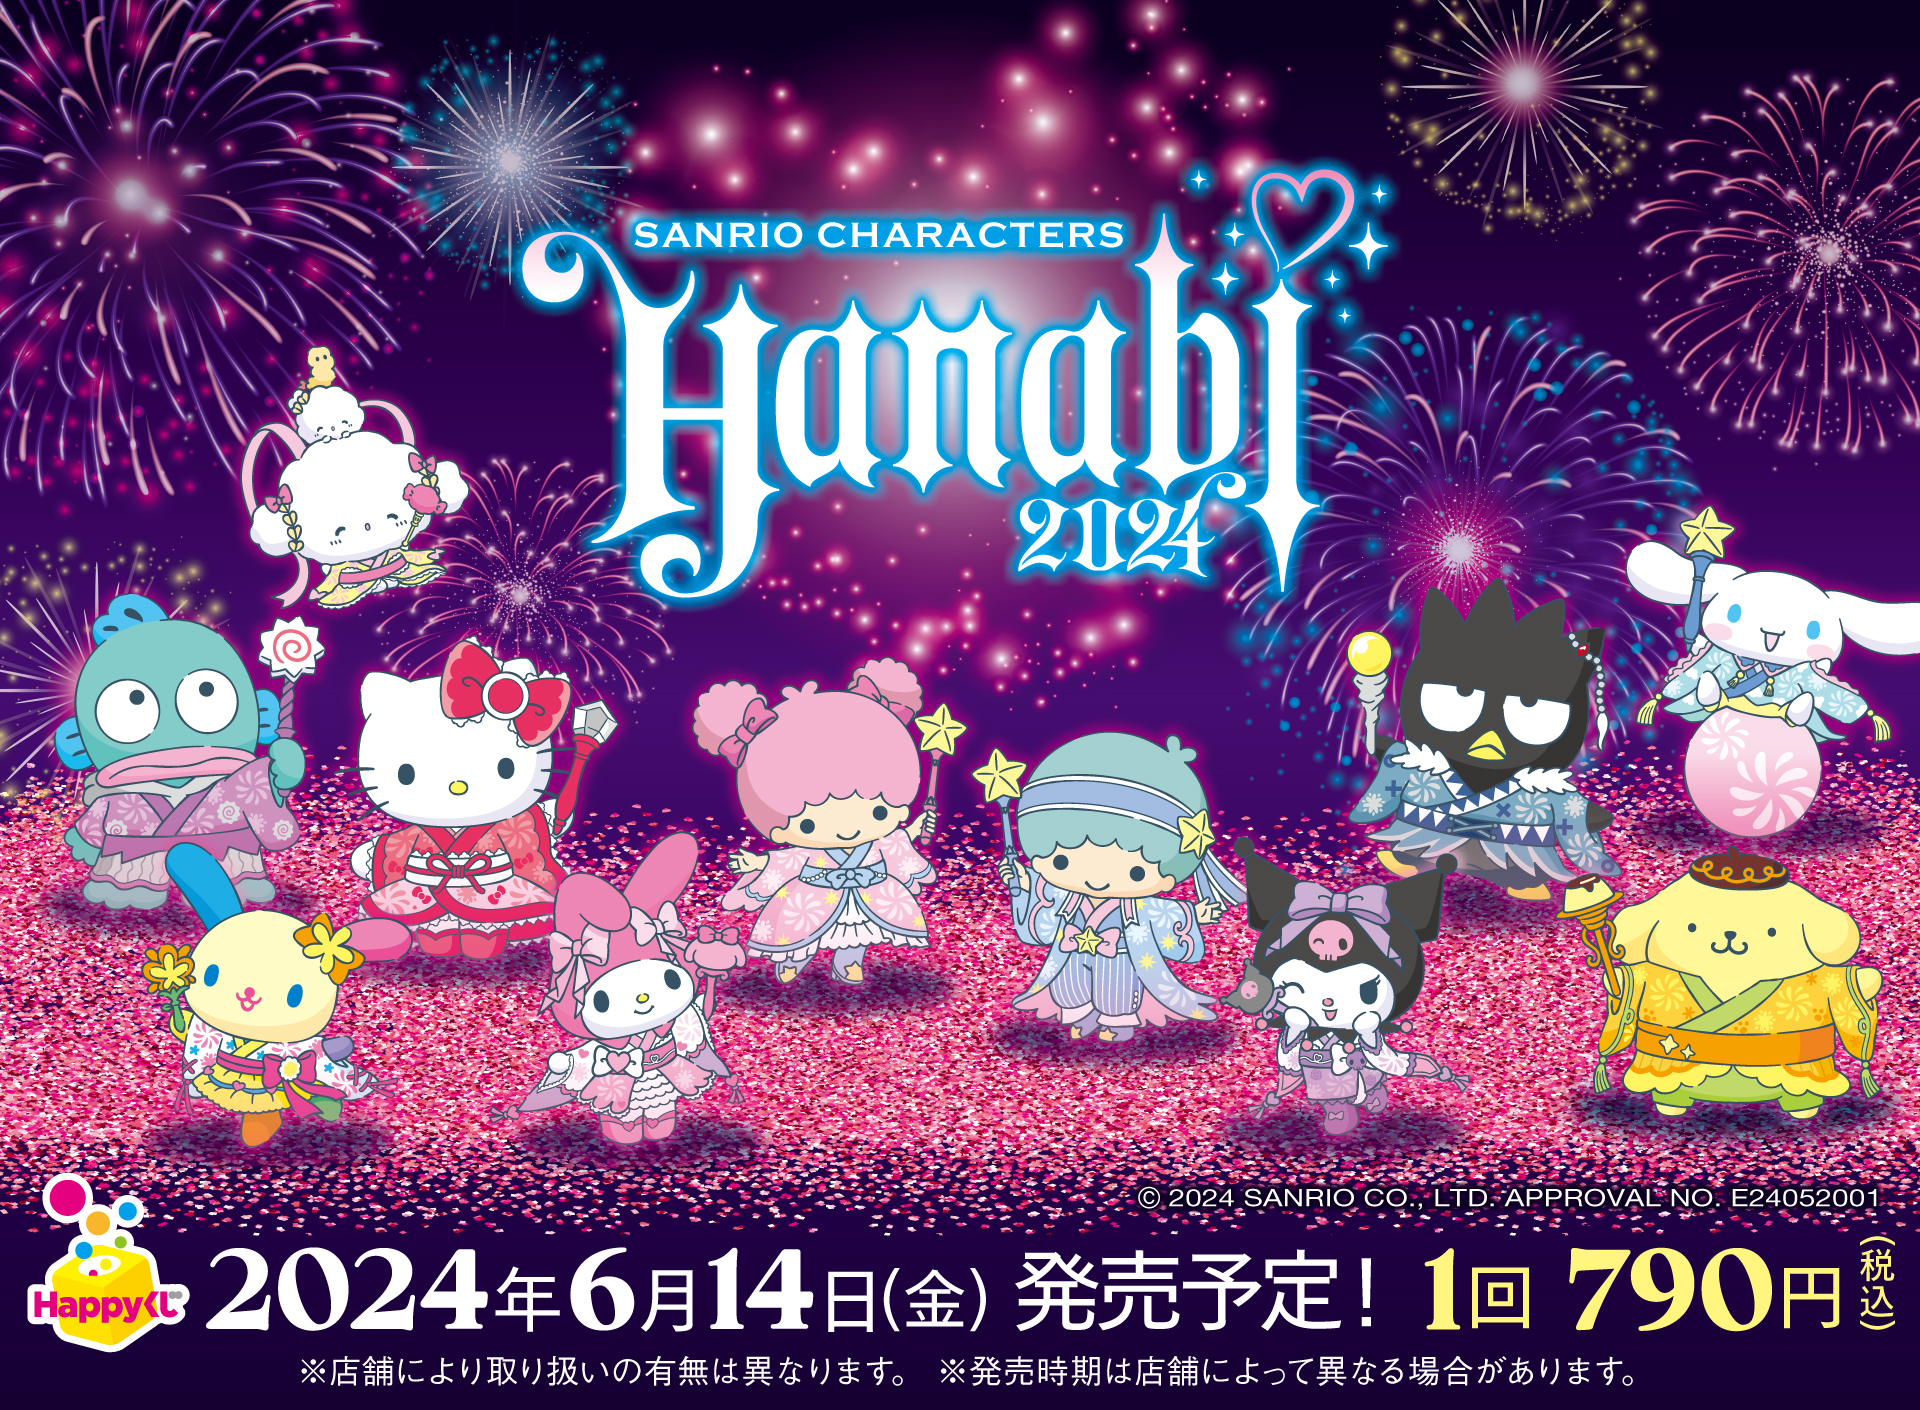 Happyくじ『Sanrio characters HANABI 2024』